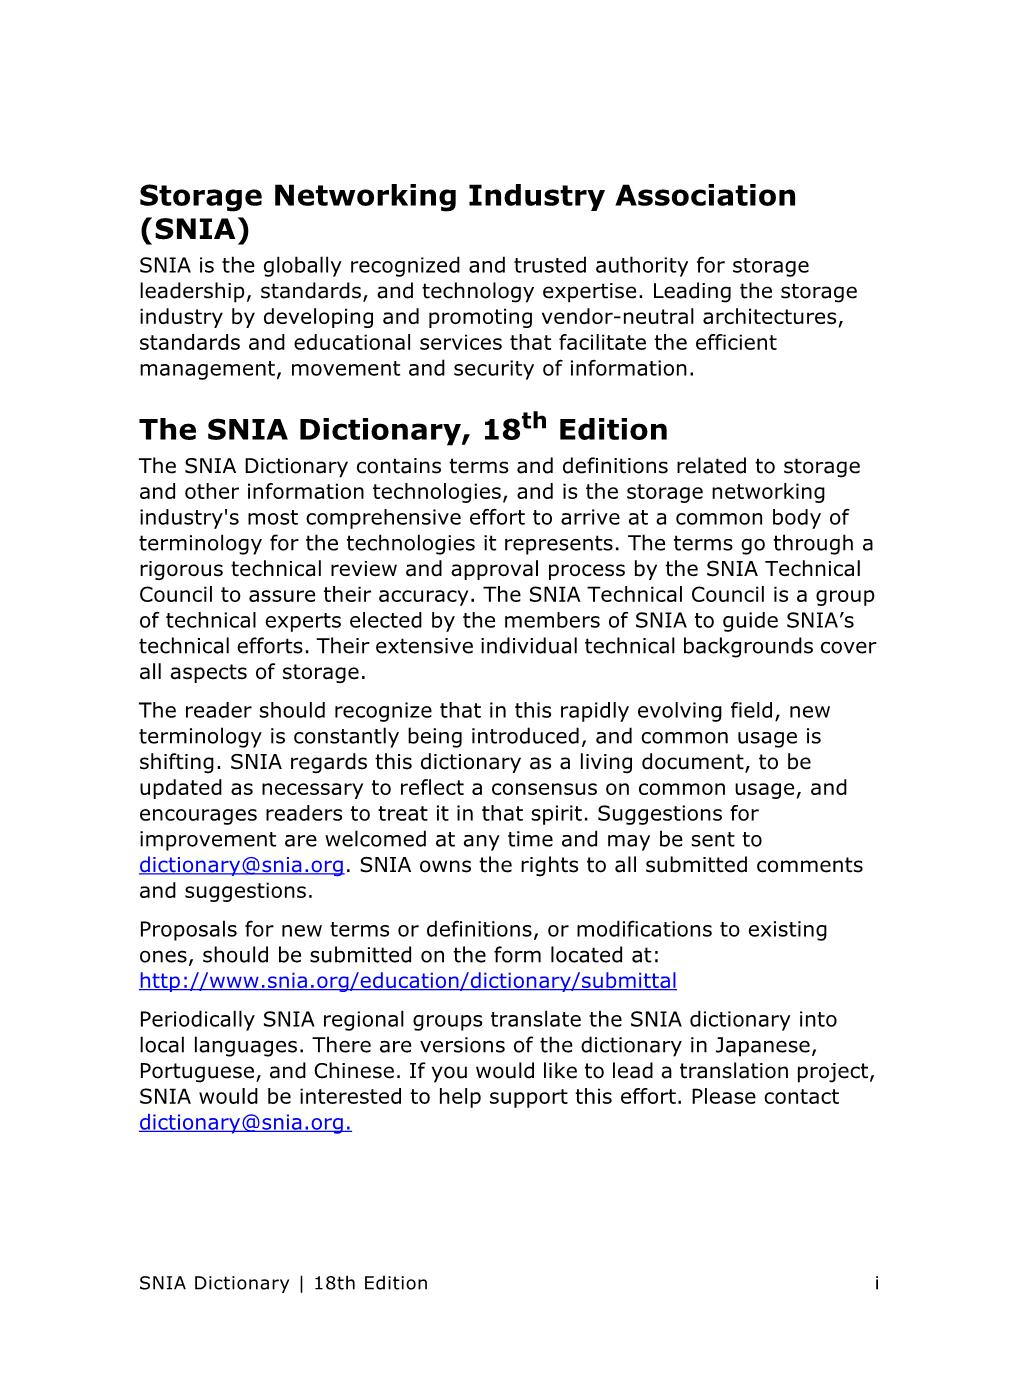 The 2016 SNIA Dictionary